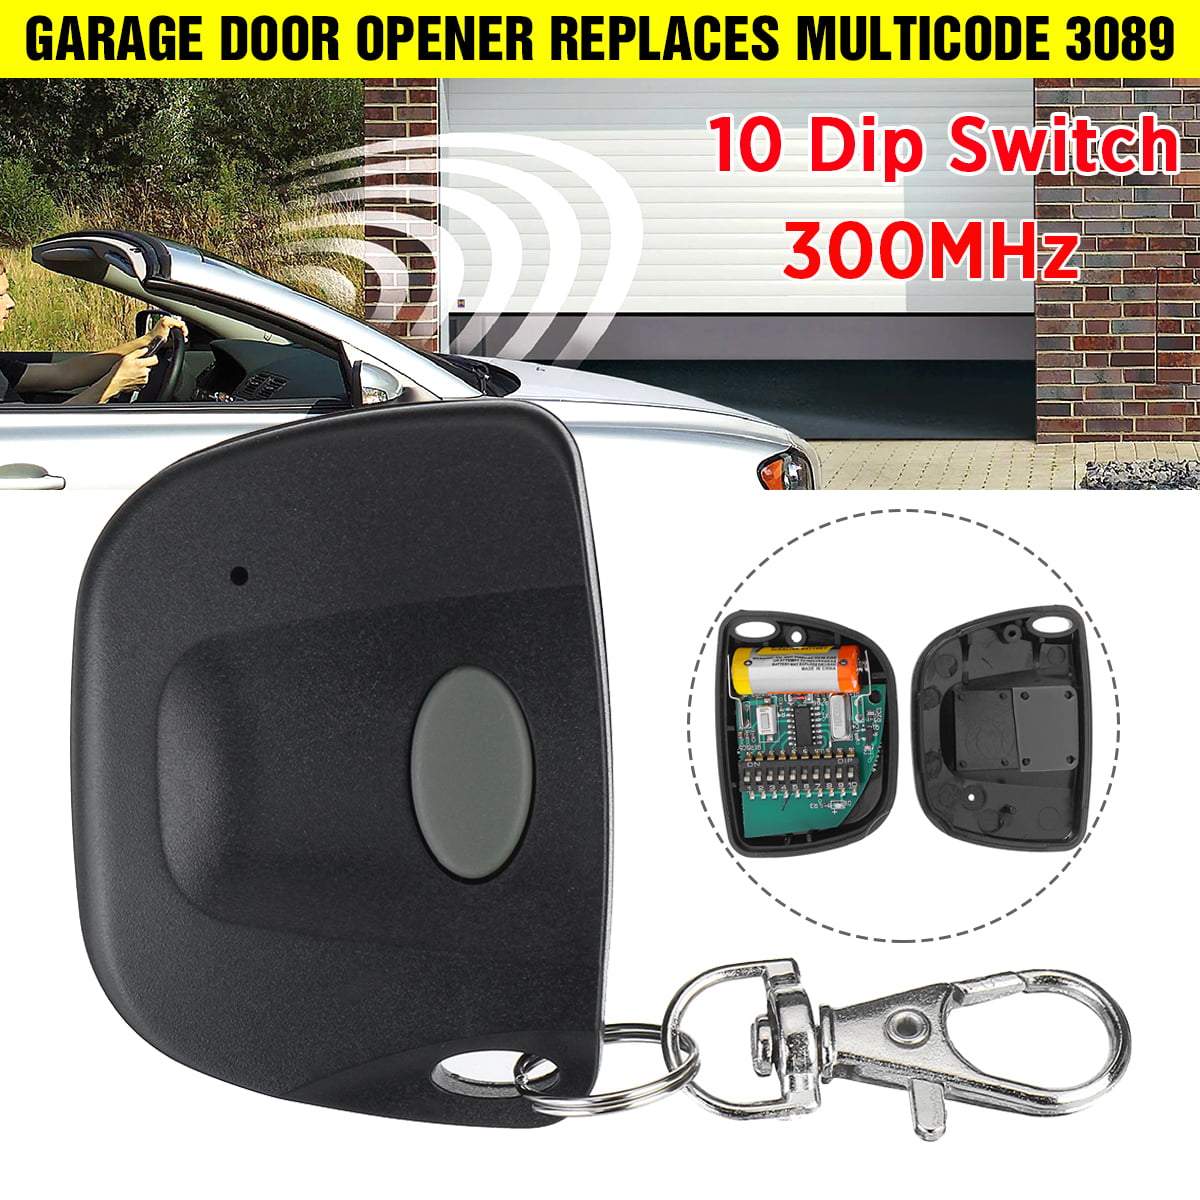 300Mhz Garage Door Wireless Remote Control Gate Opener Transmitter